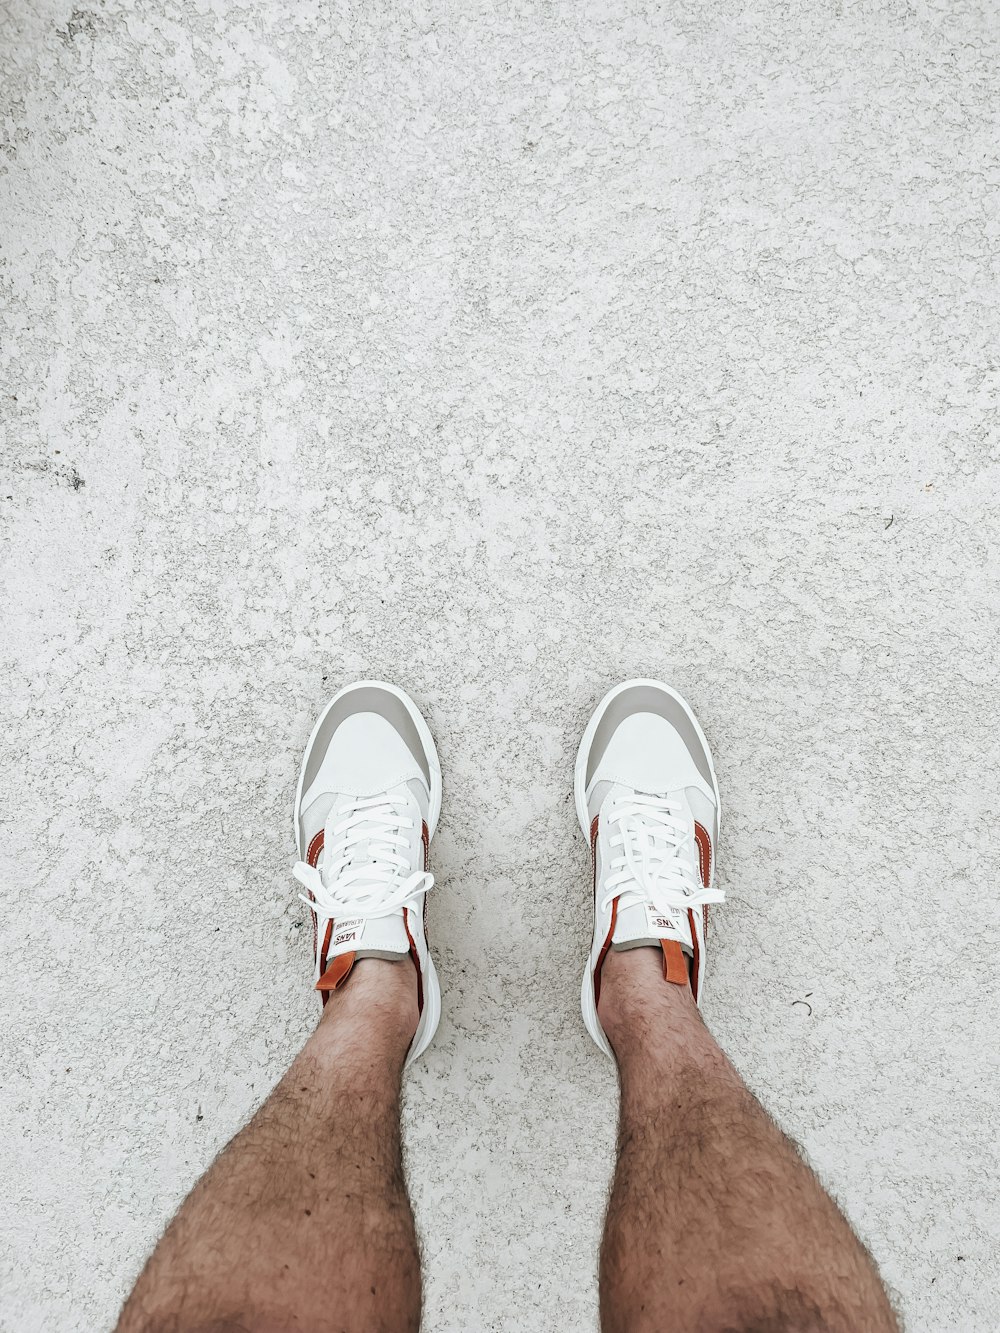 Las piernas de una persona con zapatos blancos